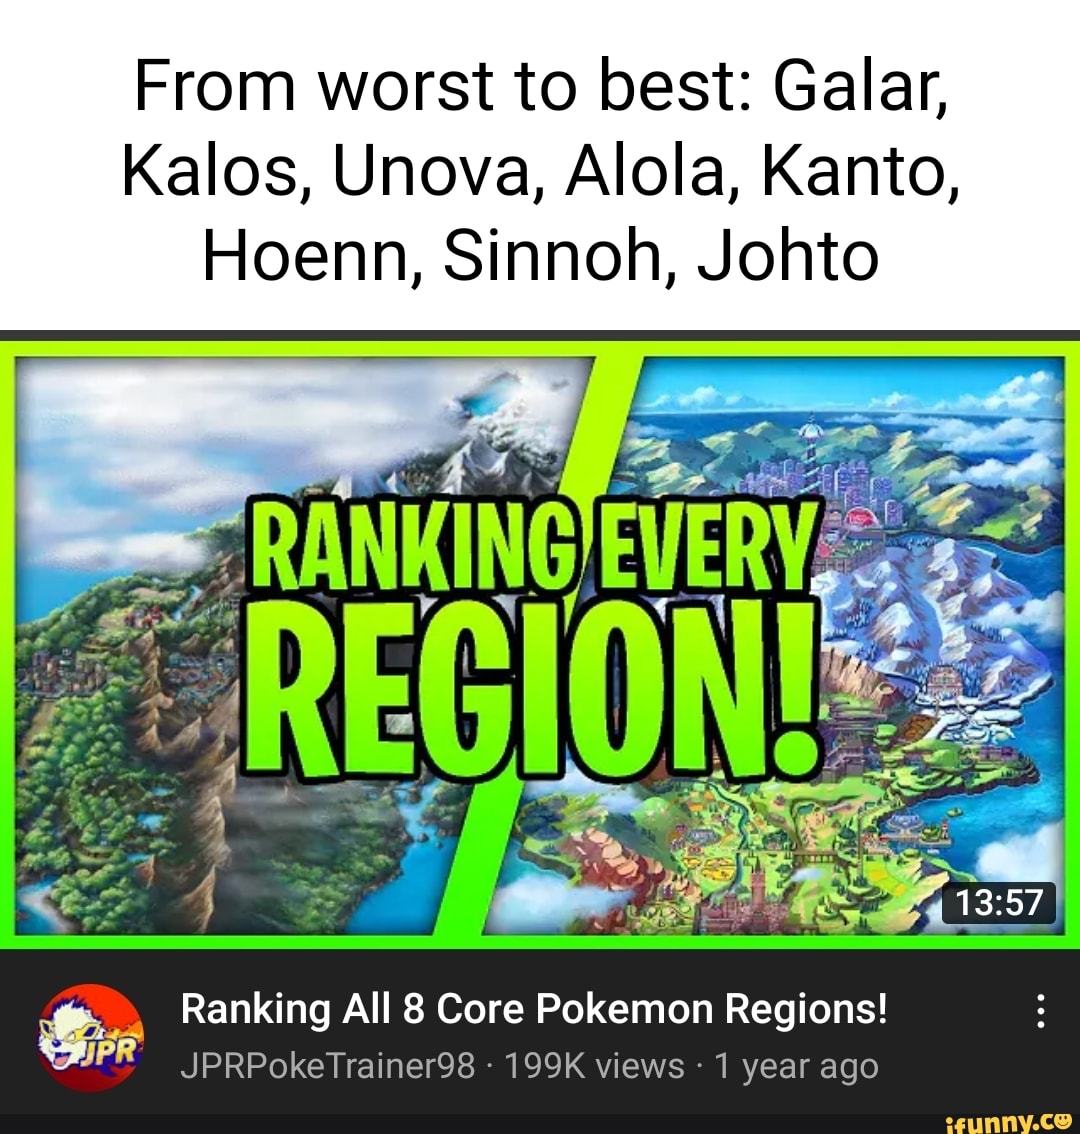 Ranking Every Region's Pokémon: Alola